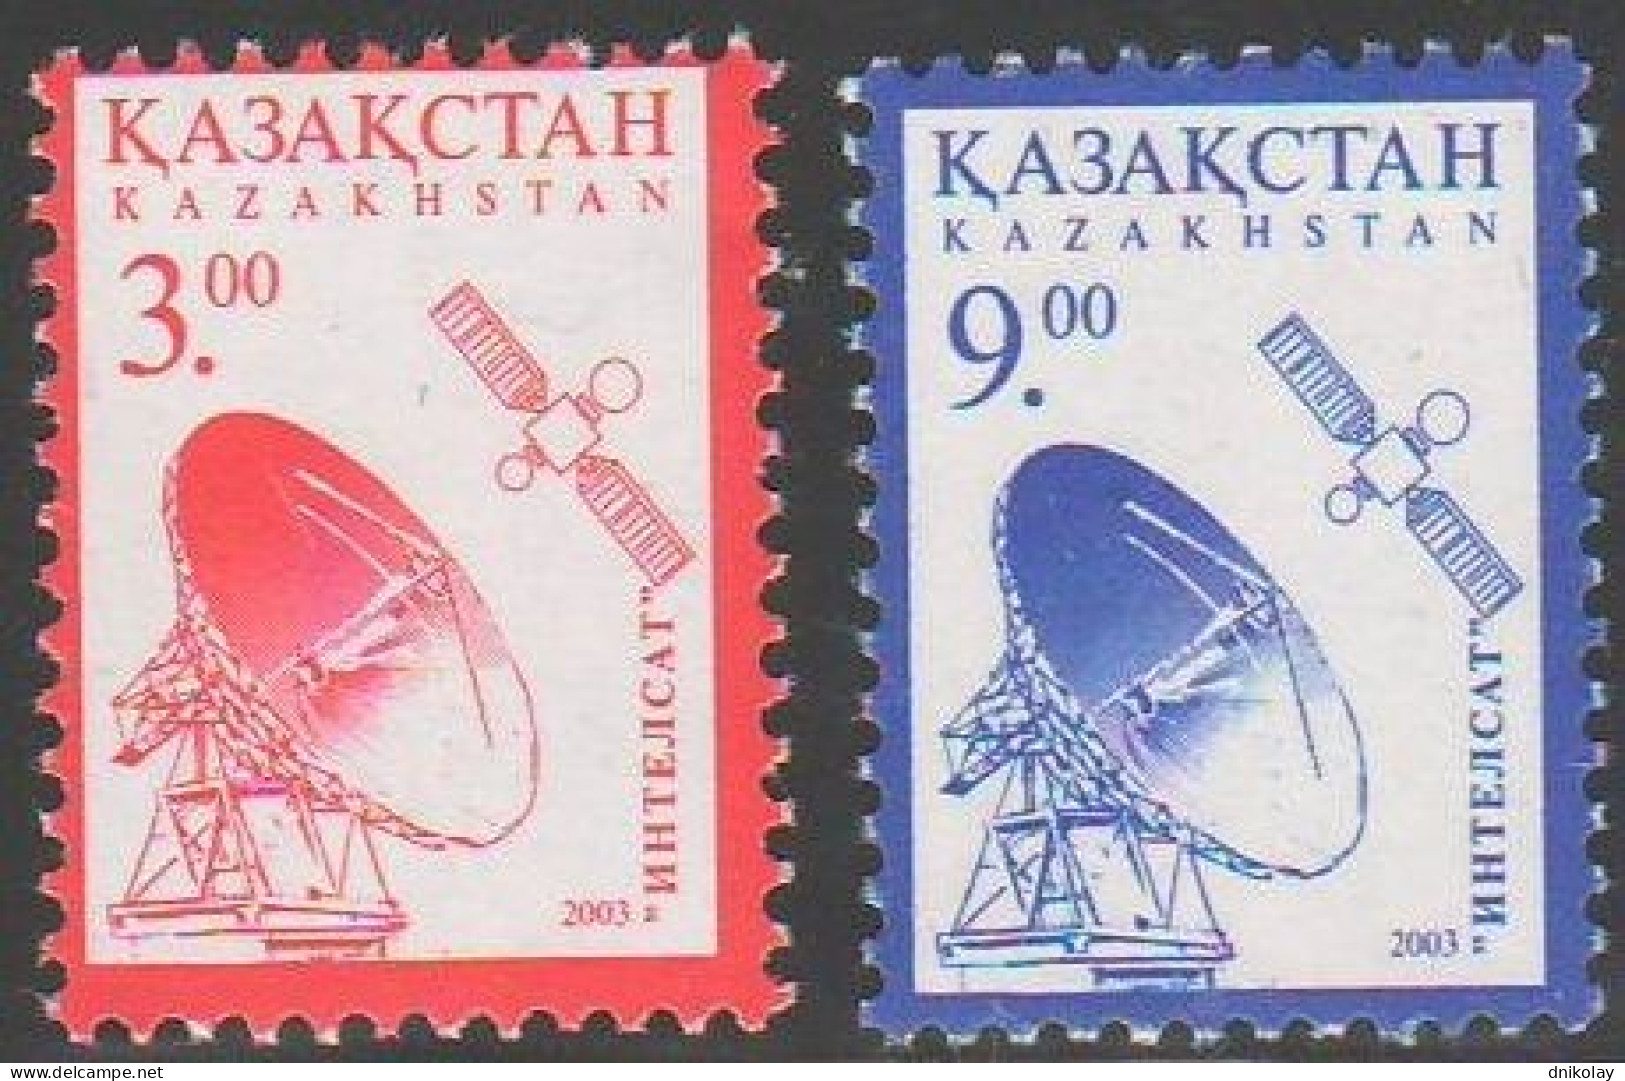 2003 441 Kazakhstan Space Satellite Station MNH - Kazakhstan